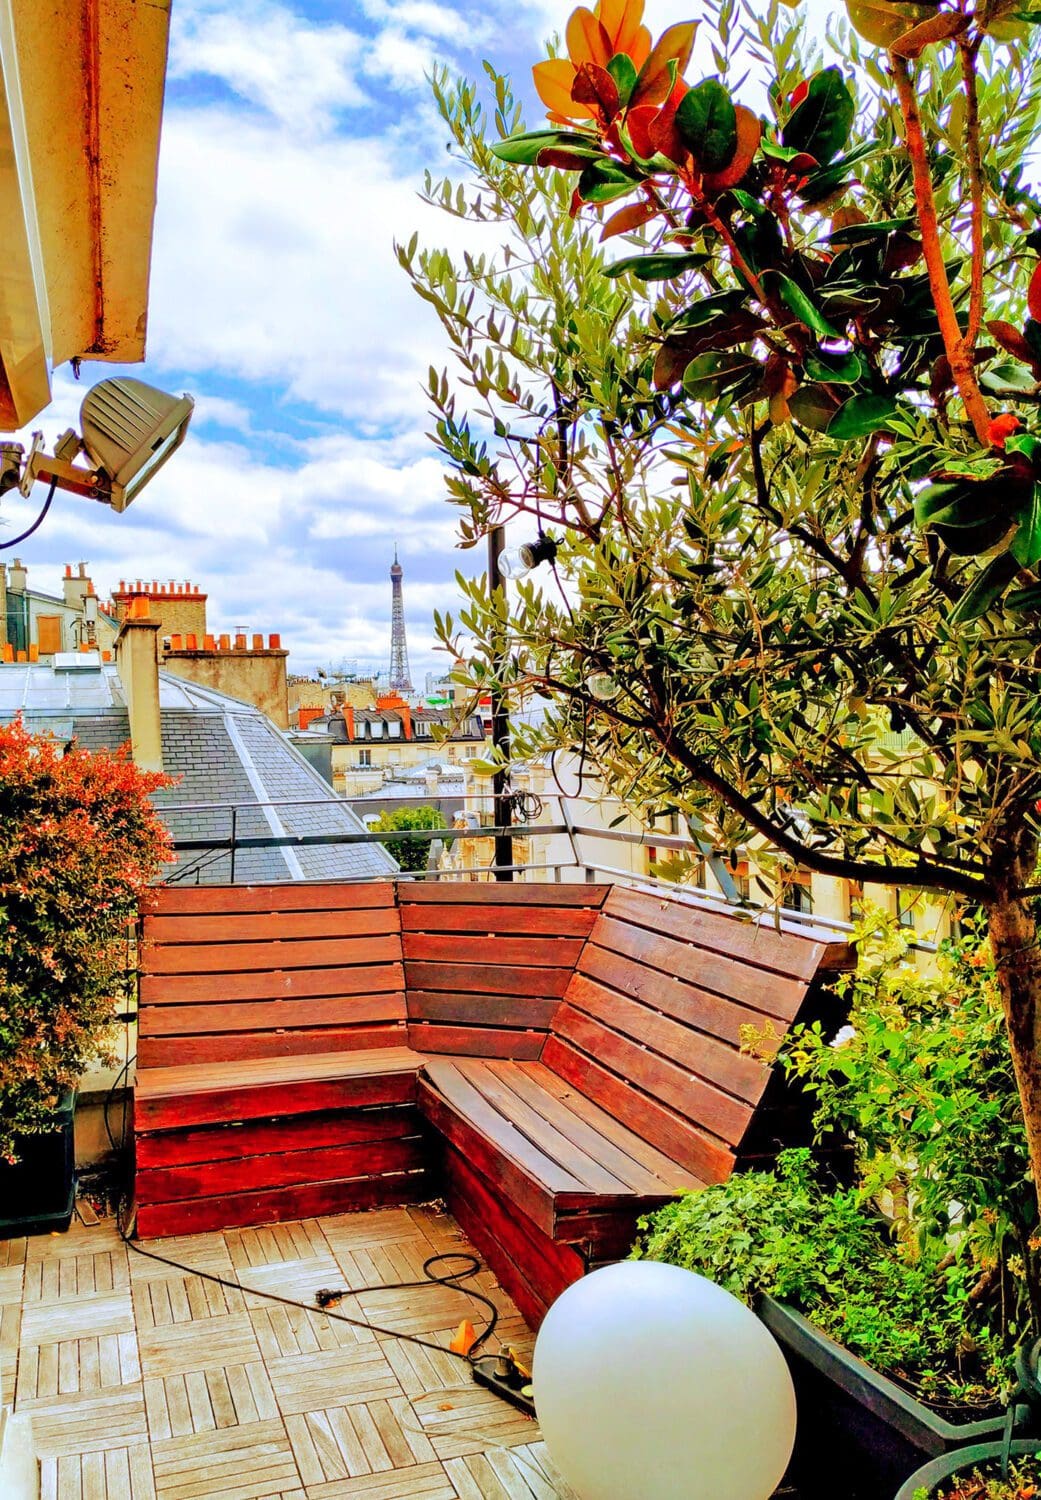 Rooftop - Le rooftop de la Faisanderie - Paris - Toi Toi Mon Toit